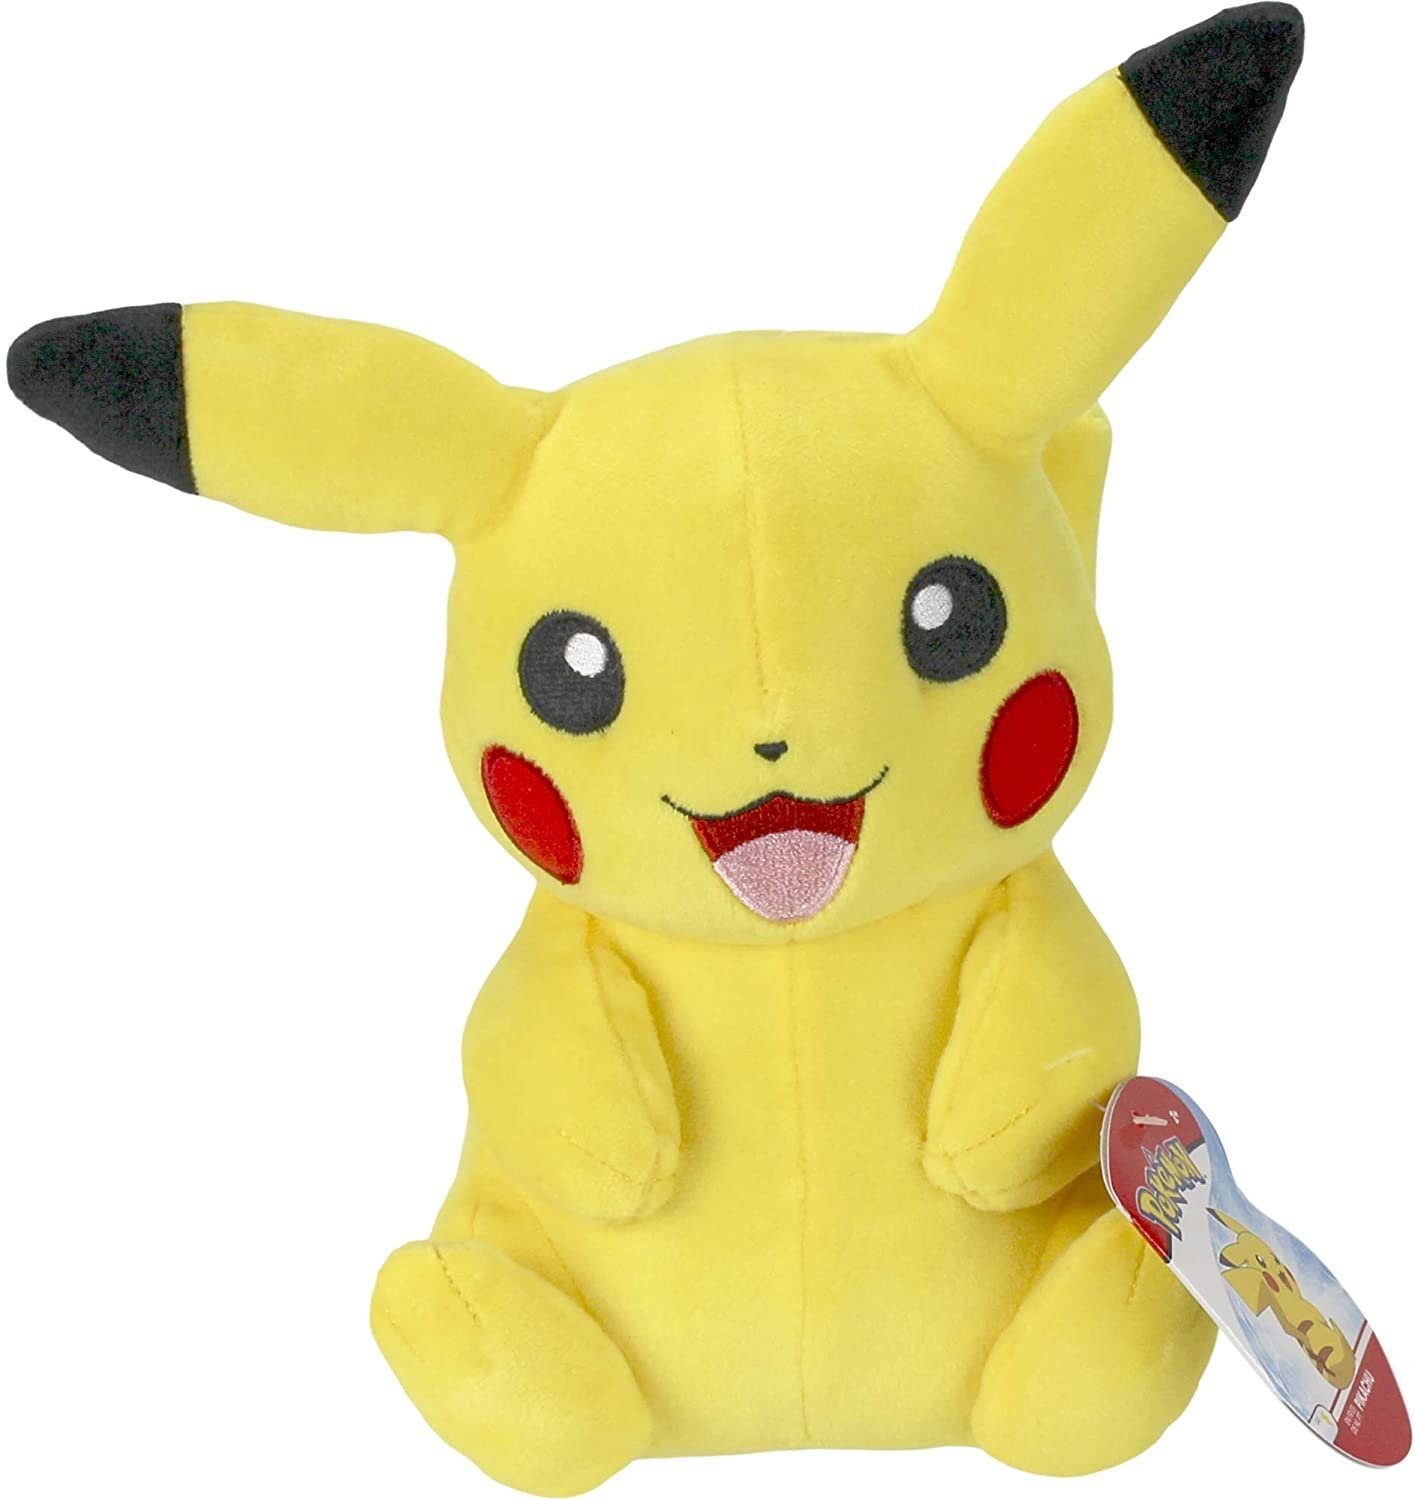 BOTI Plüschfigur »Pikachu - Pokémon Kuscheltier - 21 cm« online kaufen |  OTTO